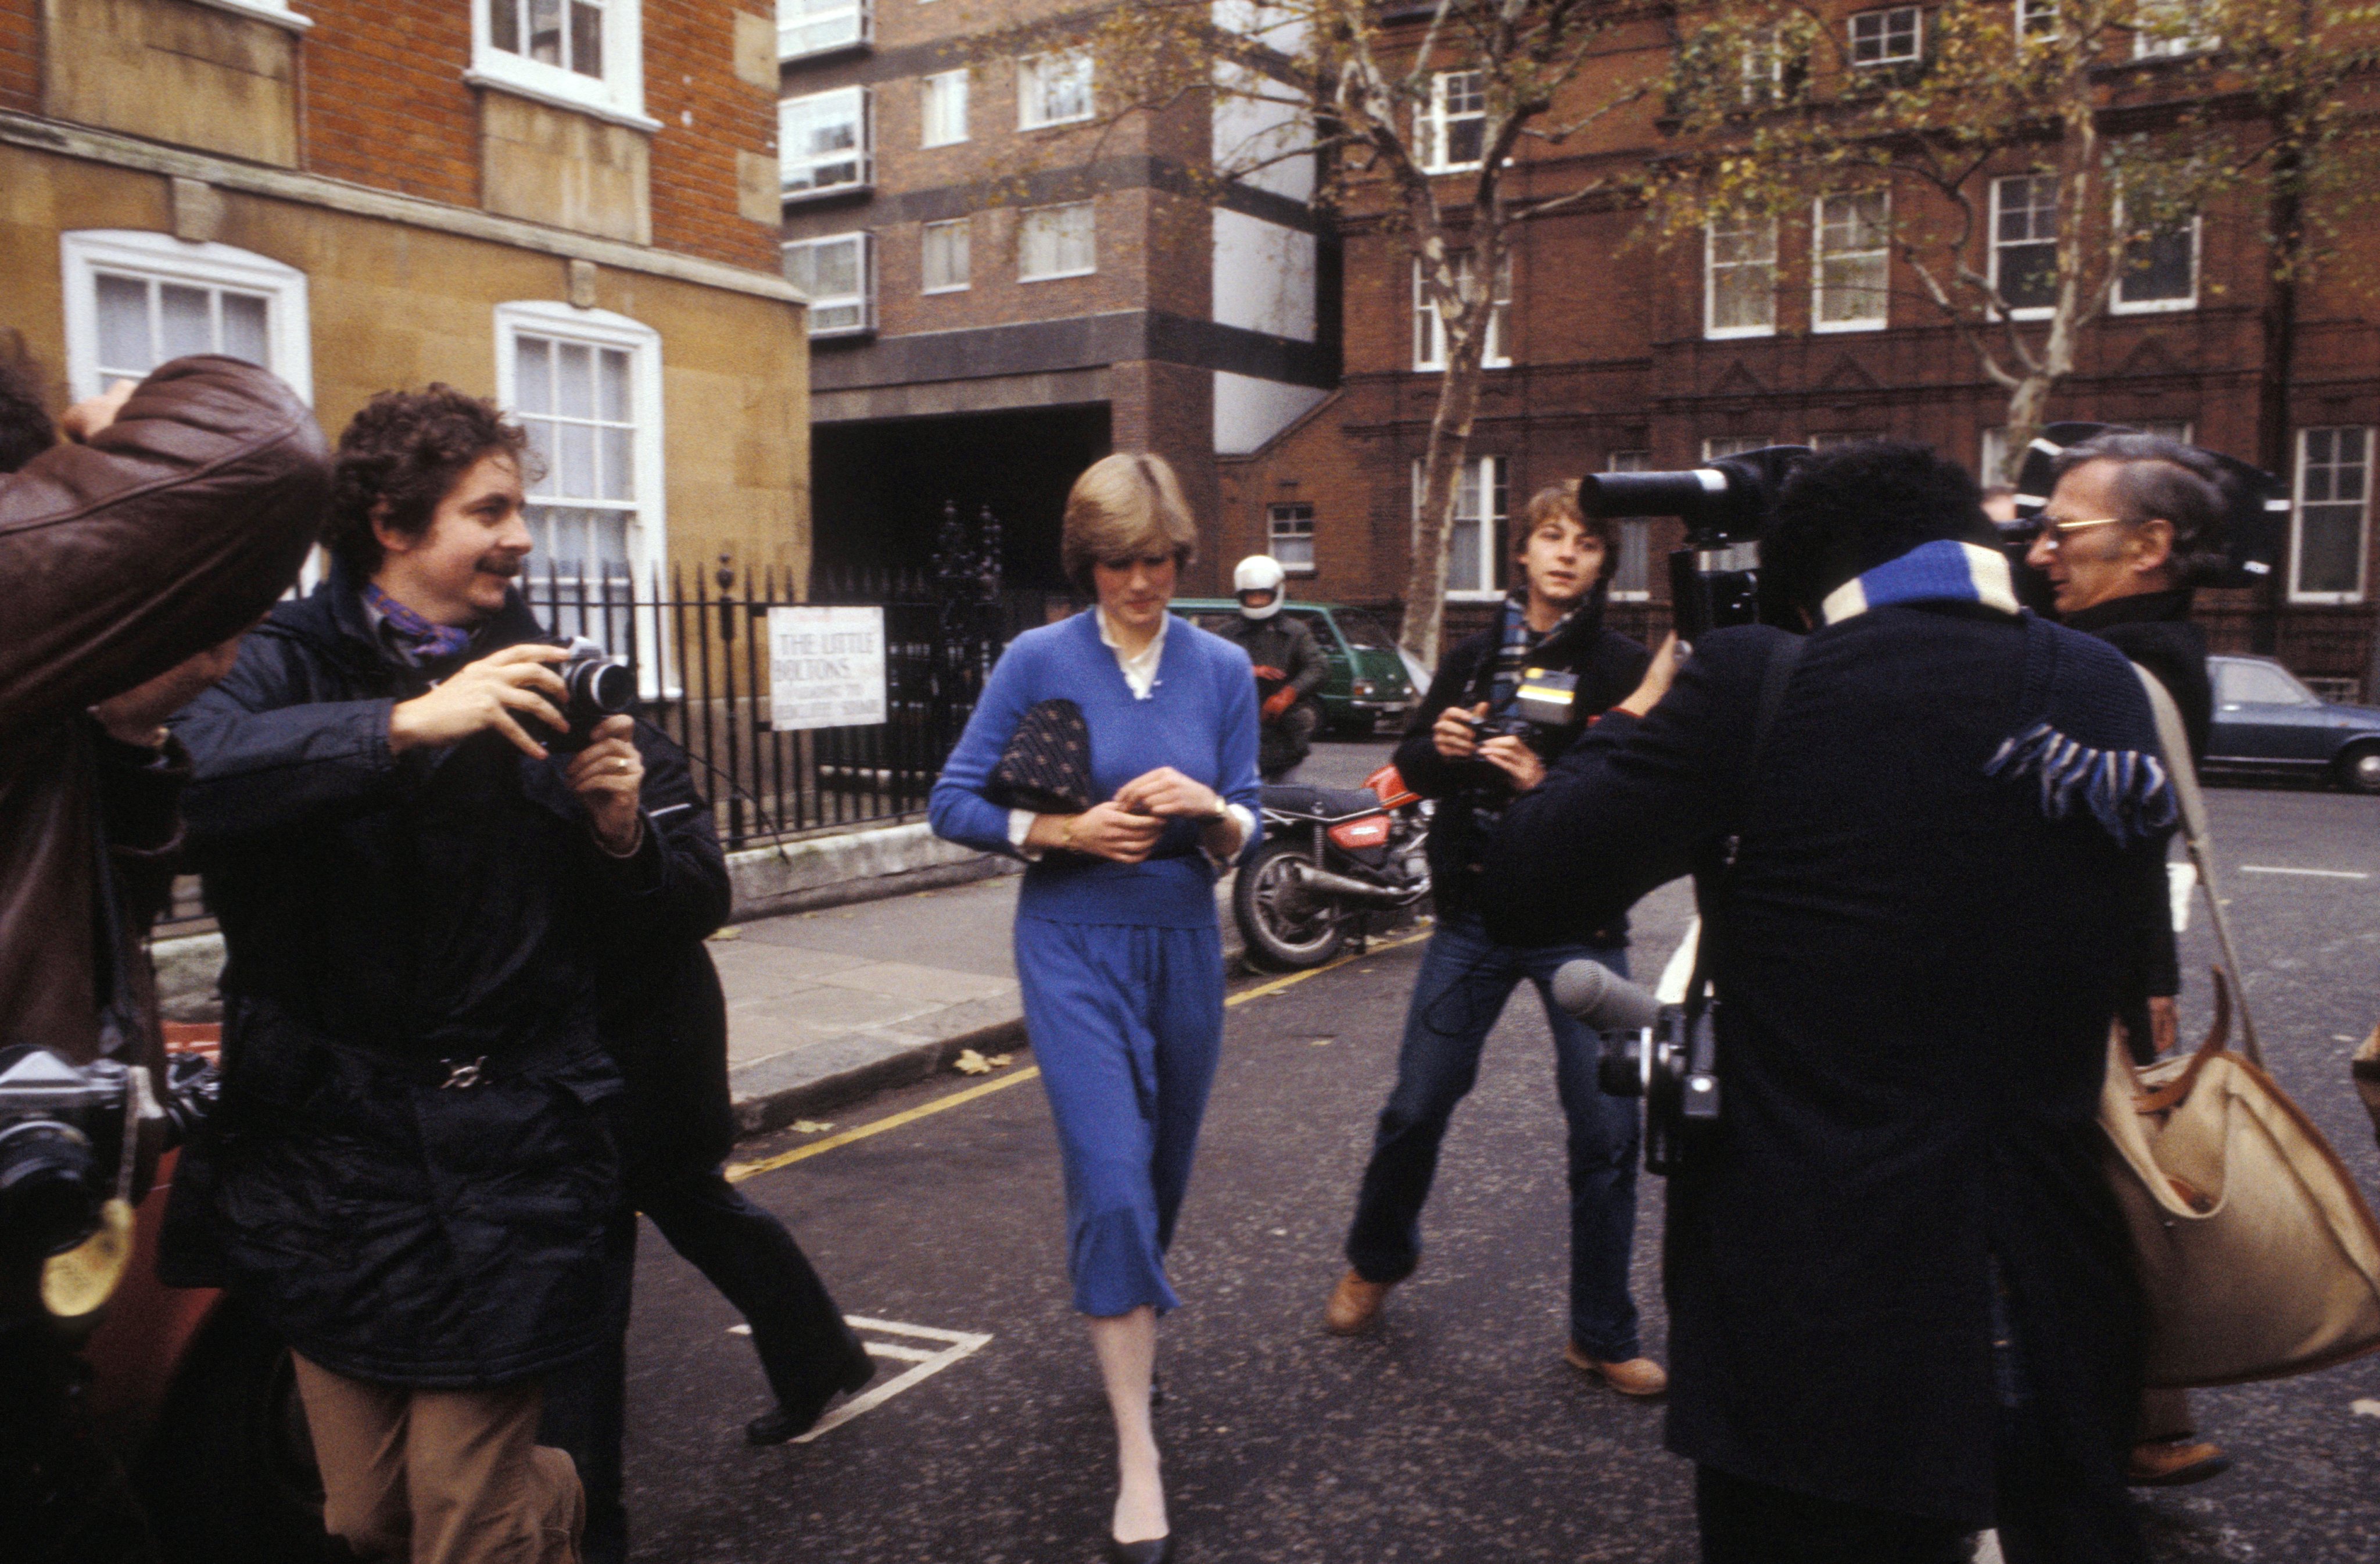 Diana et les photographes dans une rue de Londres